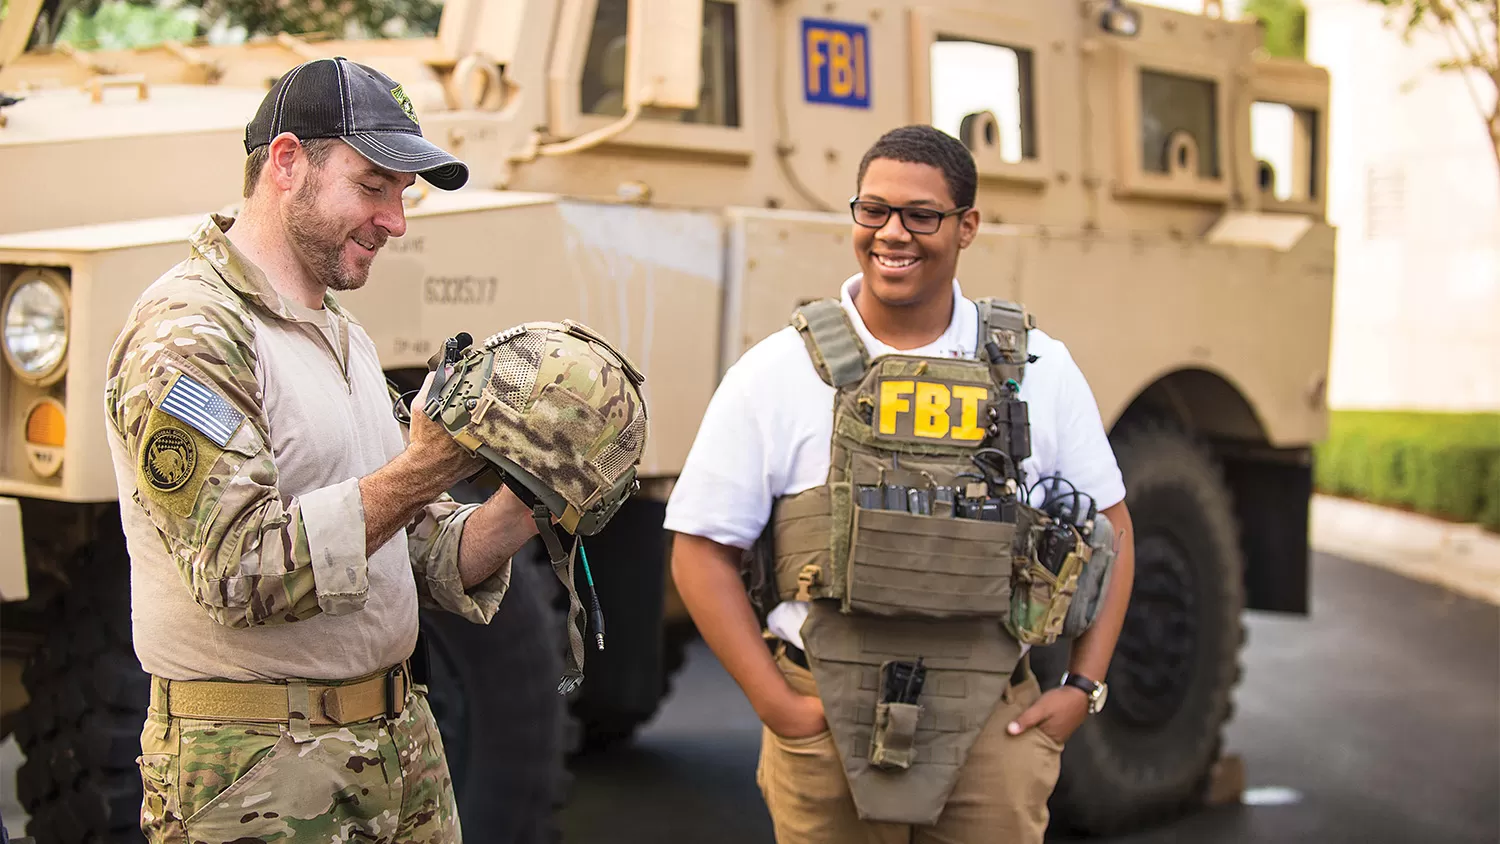 An intern in SWAT gear talking to an FBI employee